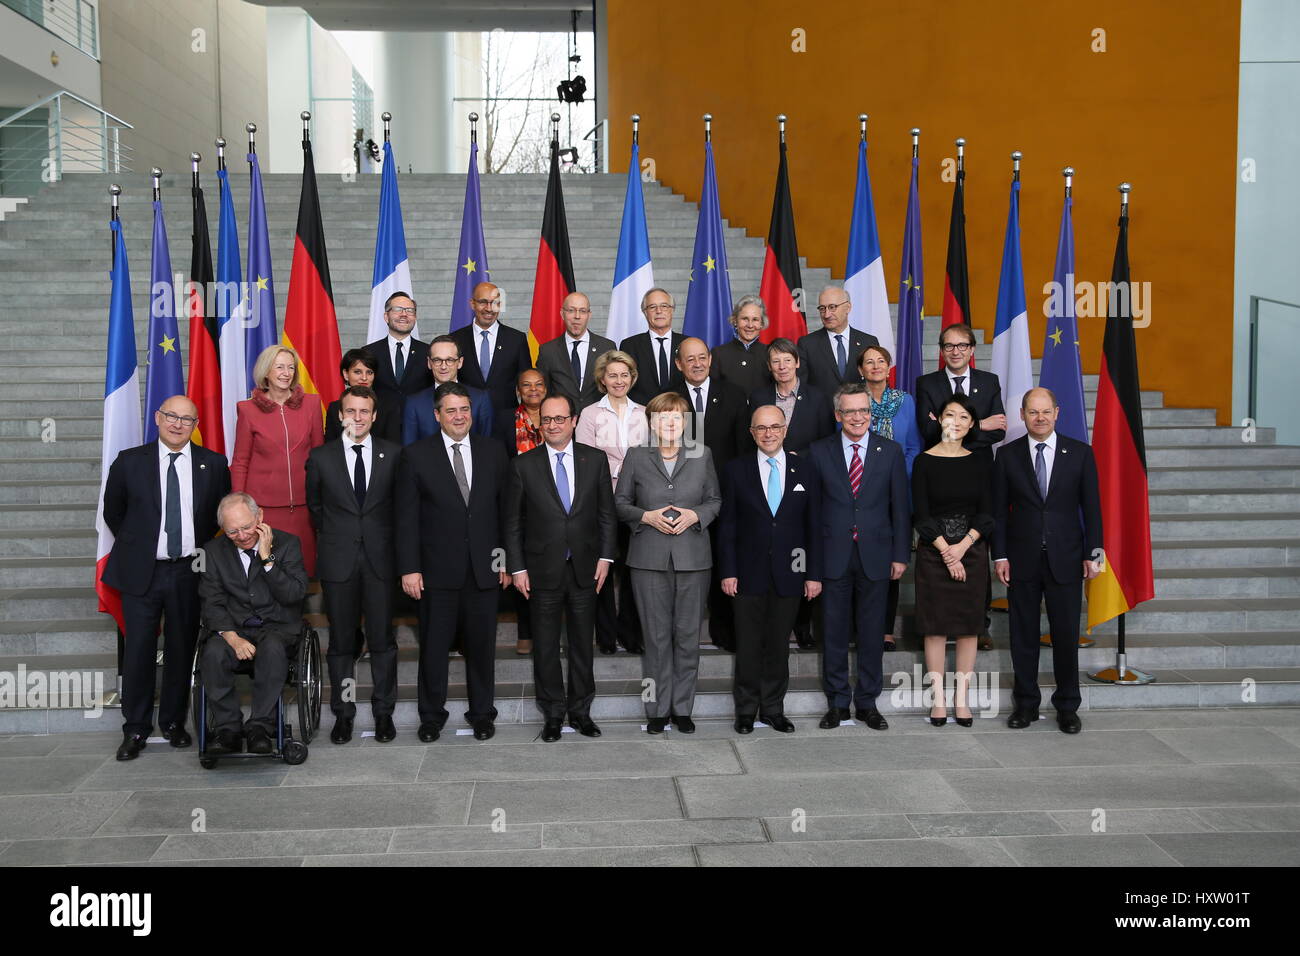 Berlín, Alemania, el 31 de marzo de 2015: Ministro Francés Alemán consejo celebró. Foto de stock